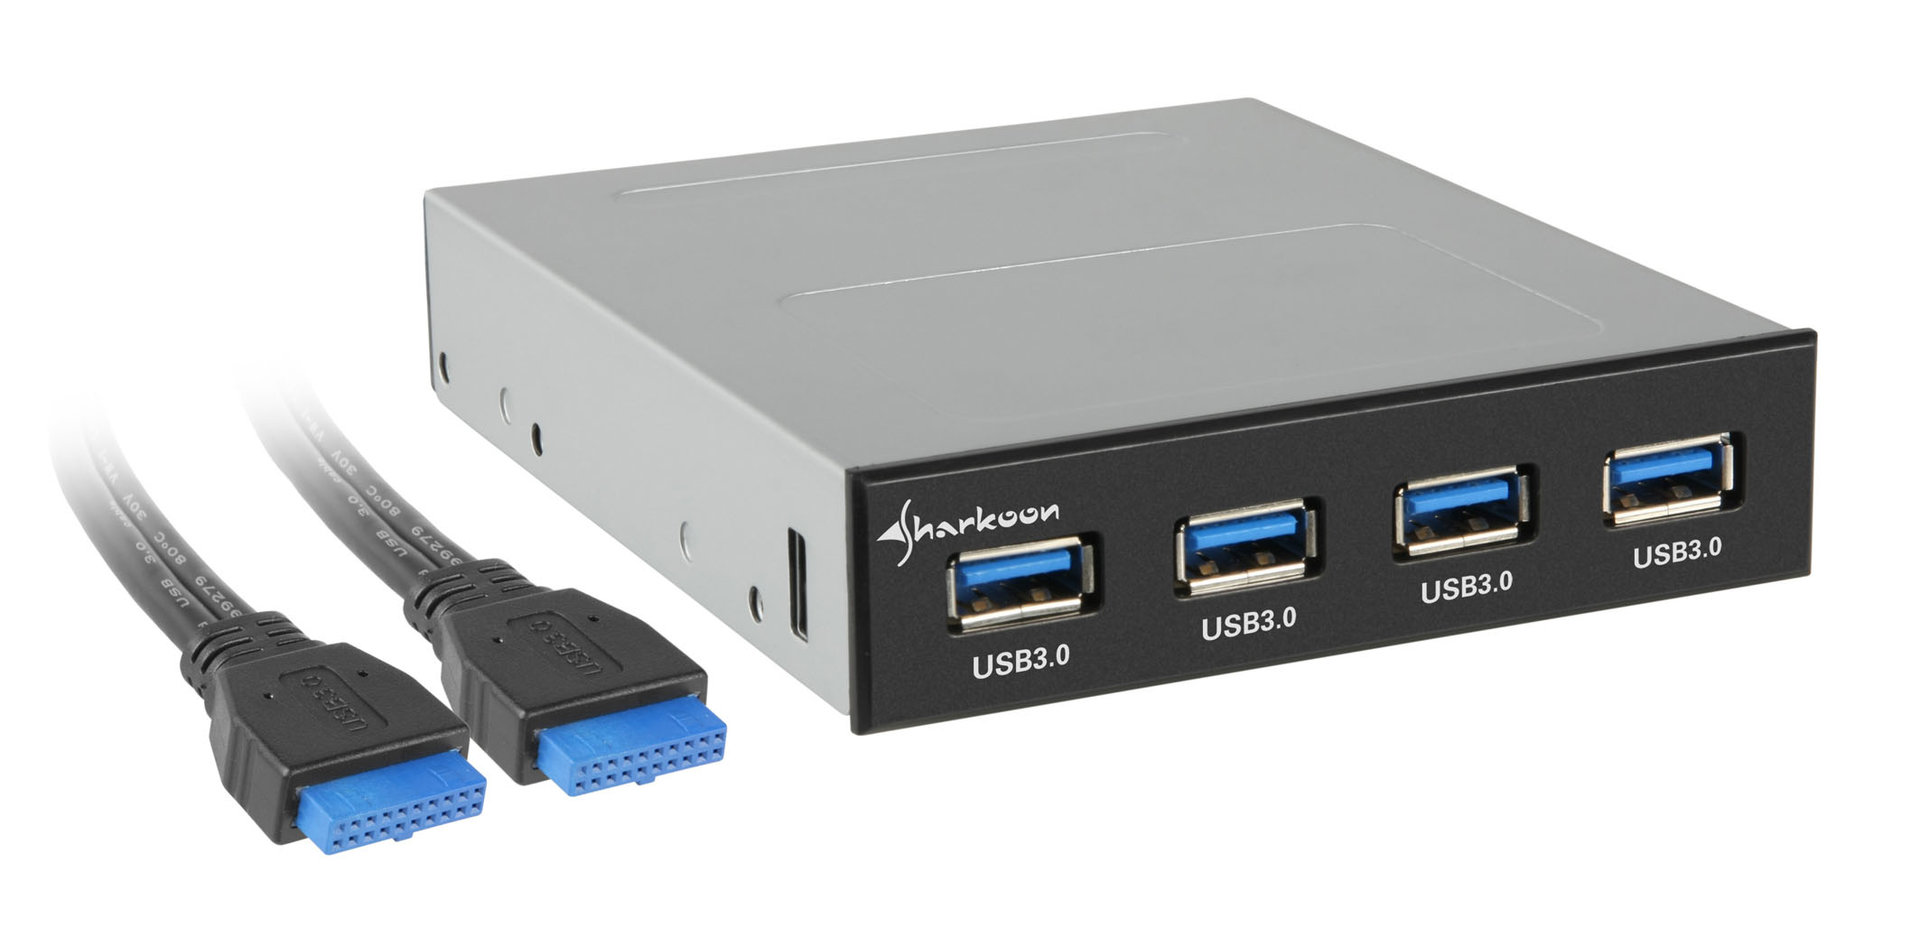 3 0 003. USB 3,0 hdd3 Dock. USB 3.0 f1802. SAS USB 3.0. USB 3.0 И USB 2.0.